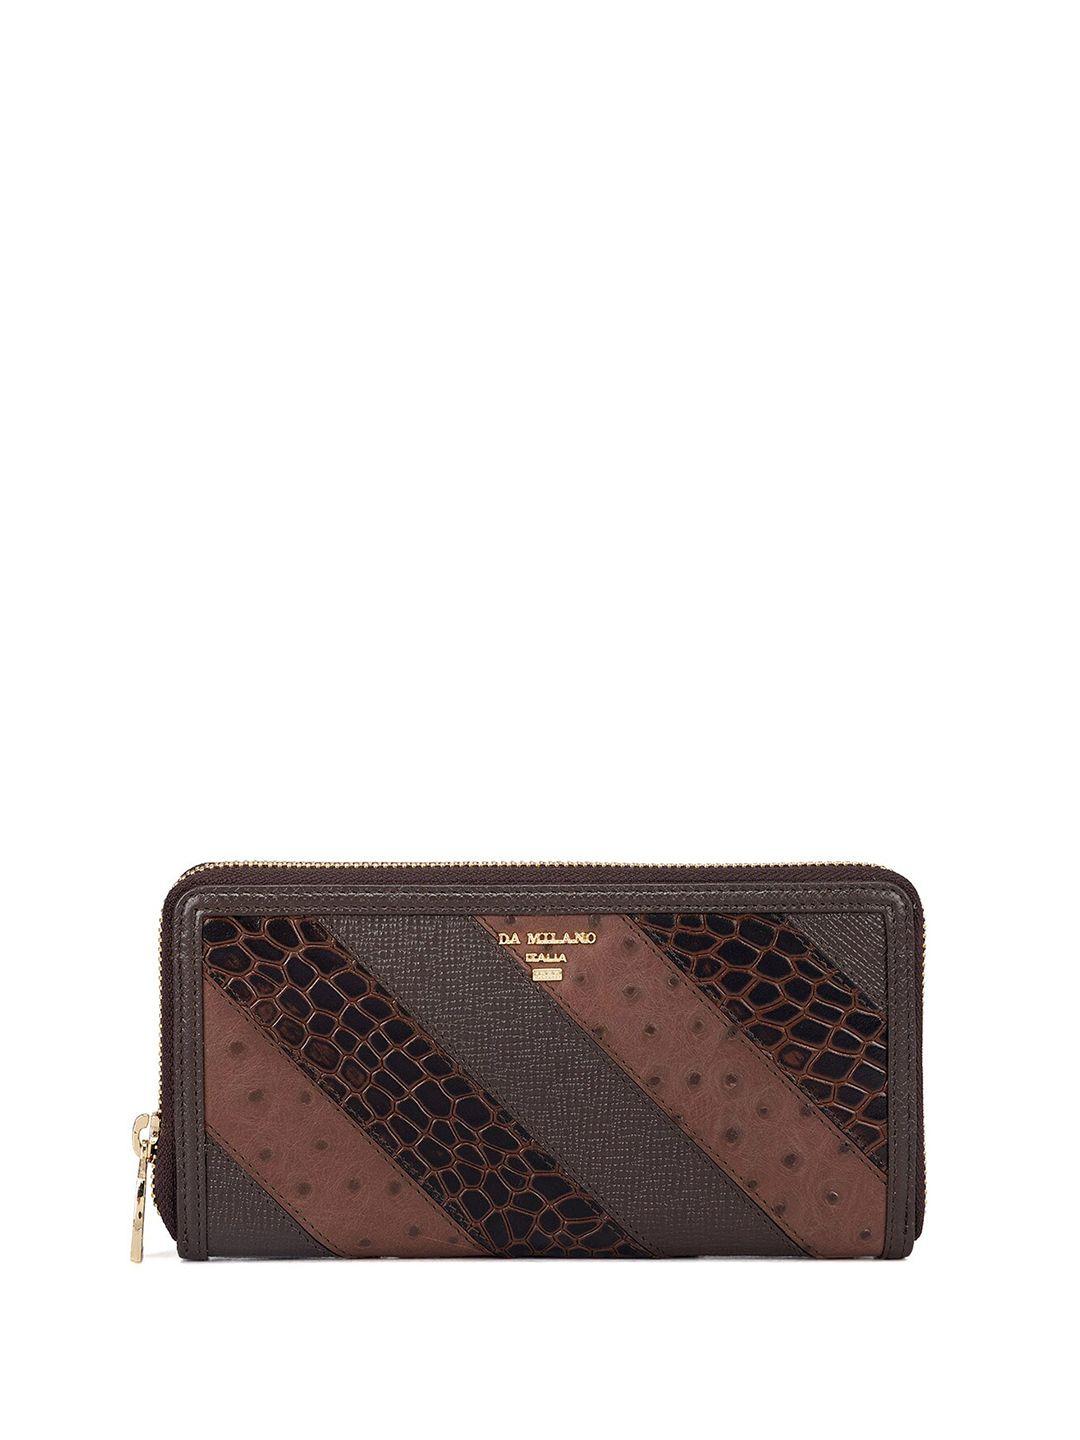 da milano women textured leather zip around wallet